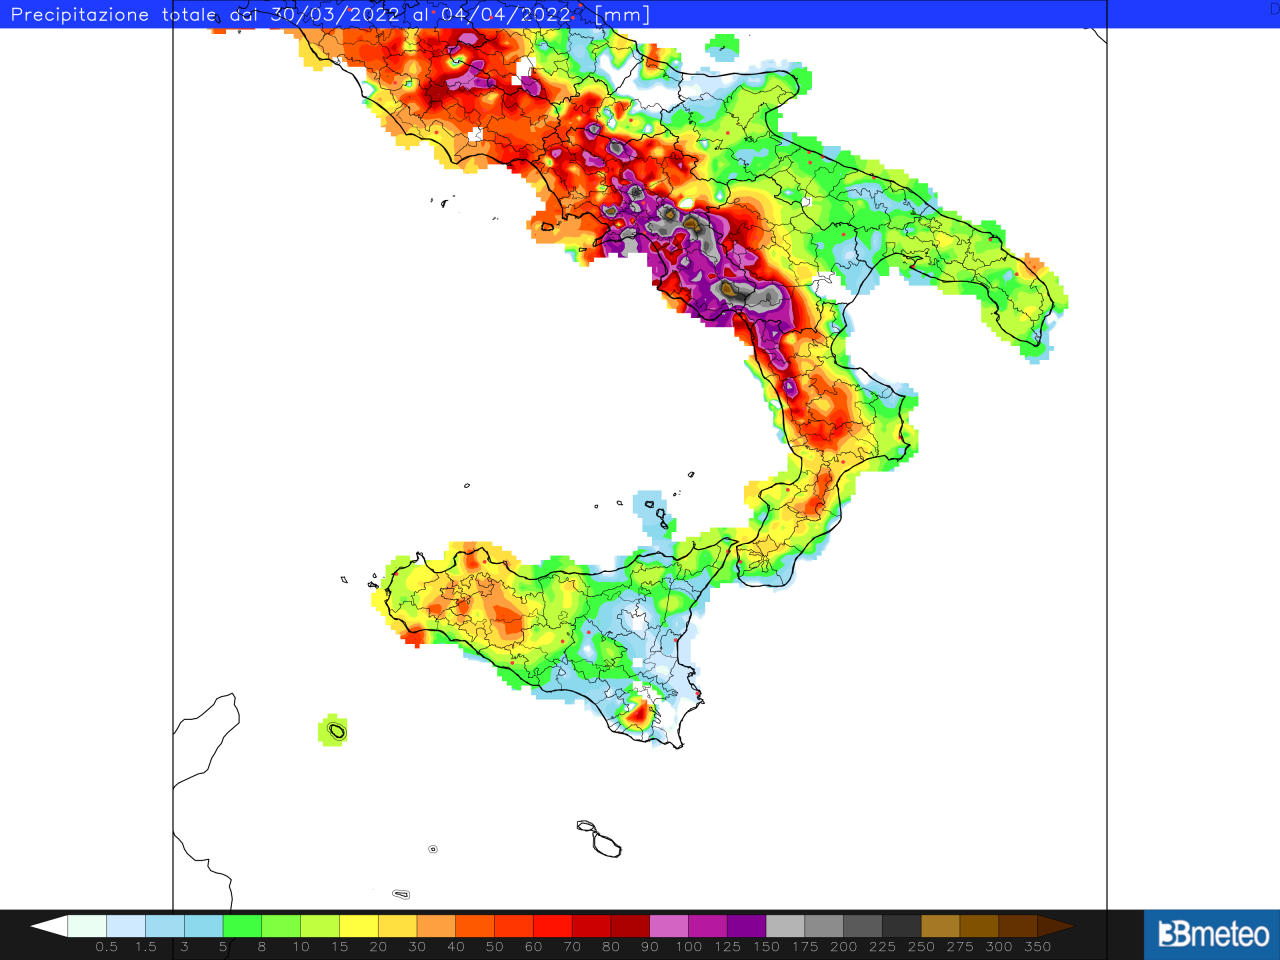 Gli accumuli pluviometrici complessivi tra il 30 marzo e il 4 aprile al Sud, rielaborazione 3bmeteo